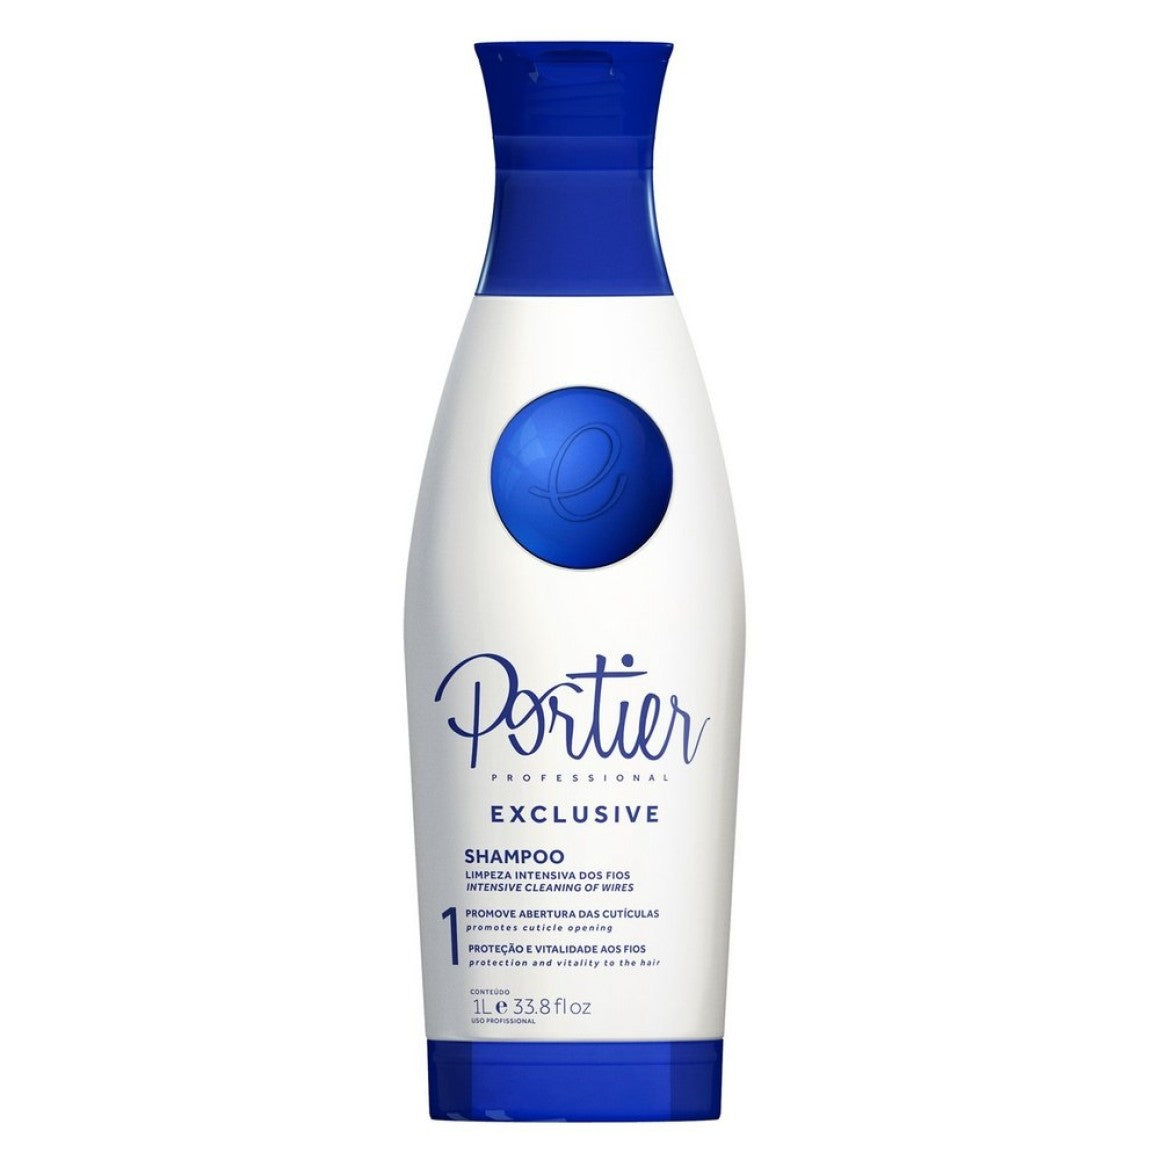 Shampoo Portier Exclusive Limpeza Intensiva - 1L